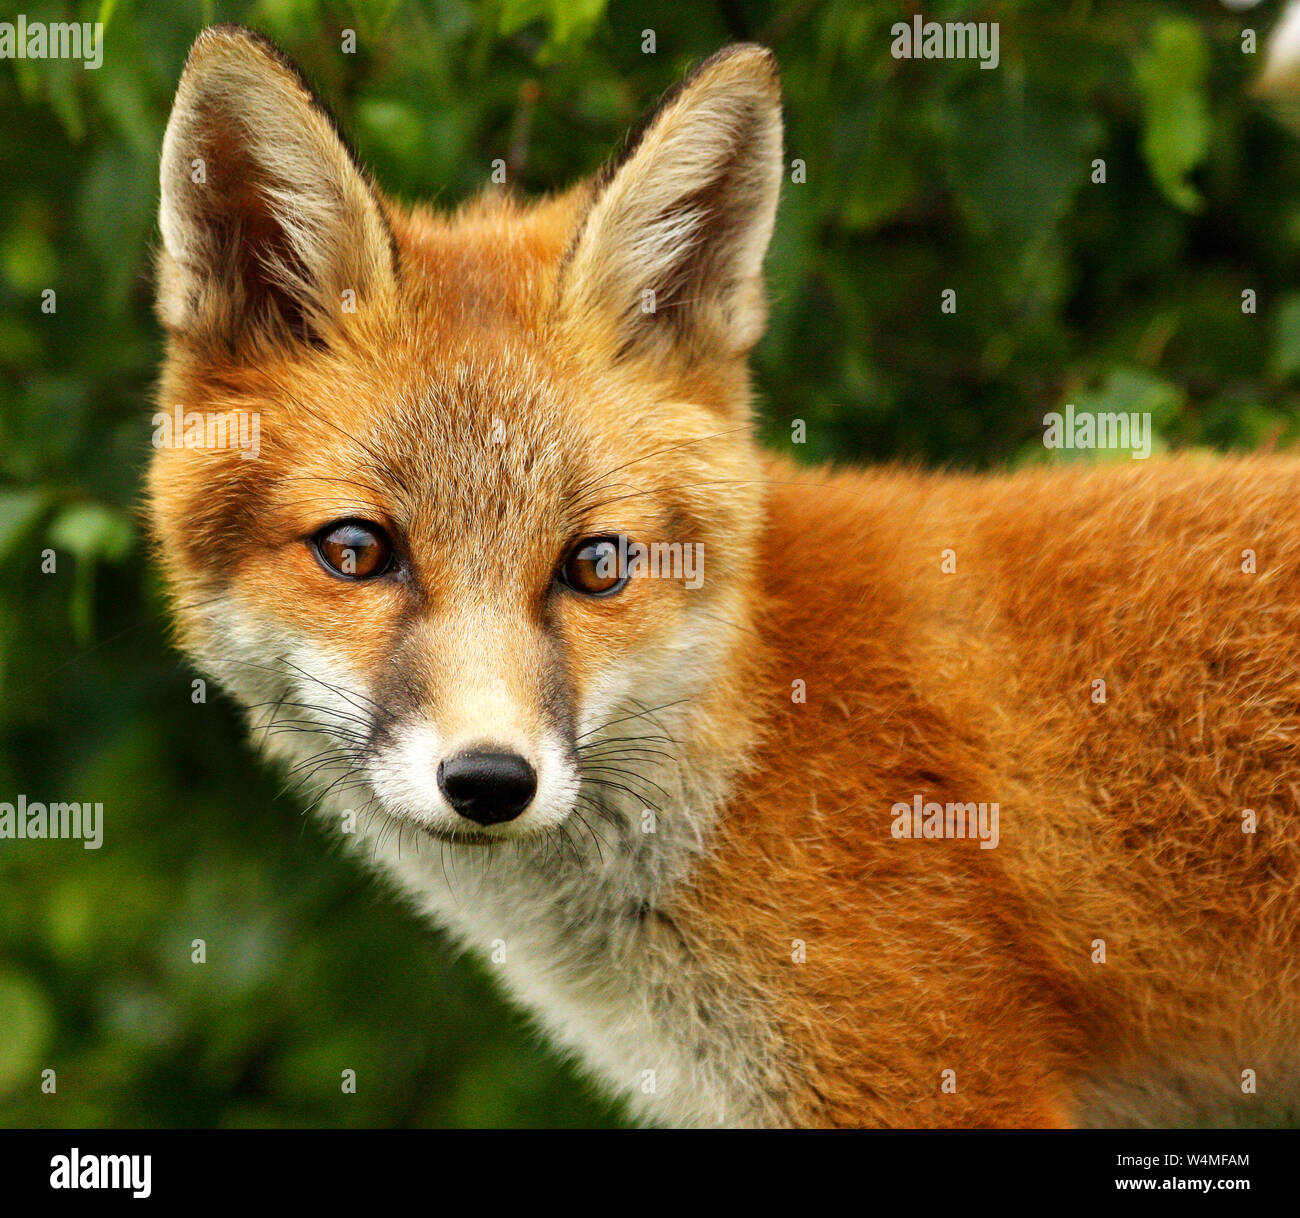 Die Red Fox (Vulpes vulpes): Ist eine Ikone der britischen Wildnis. Mit seiner markanten roten Fell und dem buschigen Schwanz es einfach wunderschön anzusehen ist. Stockfoto